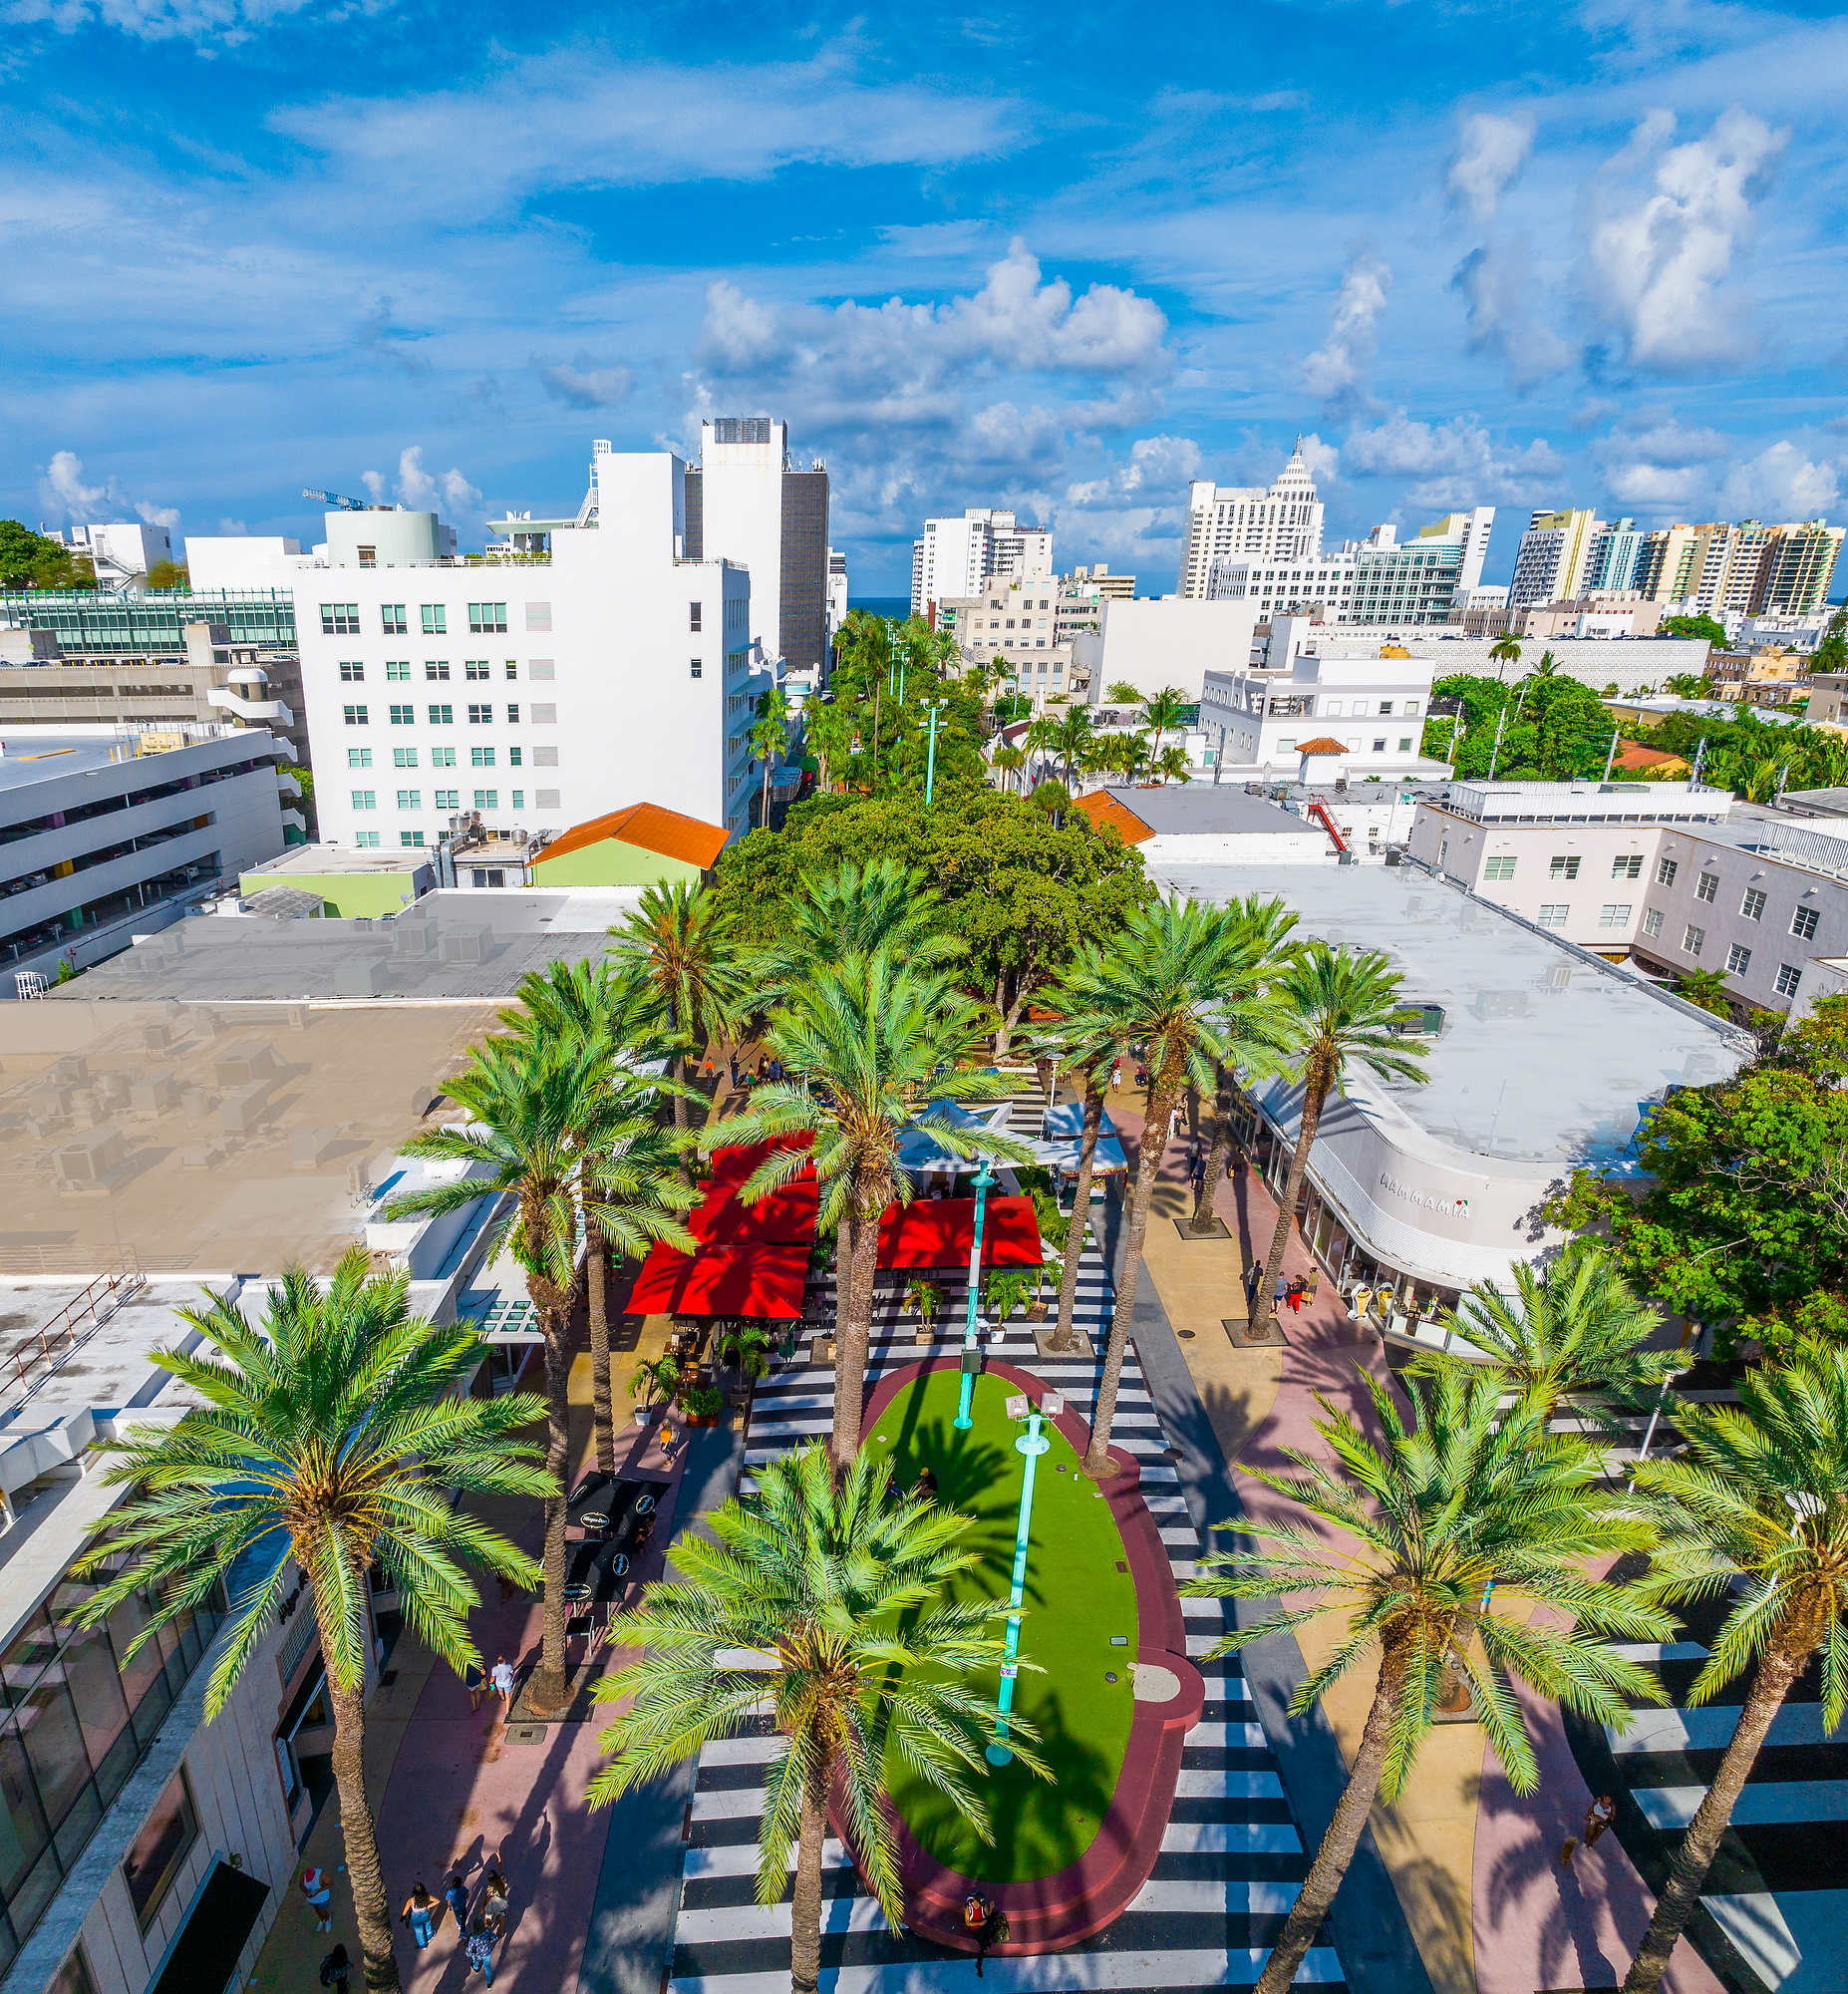 Where to Shop in Miami